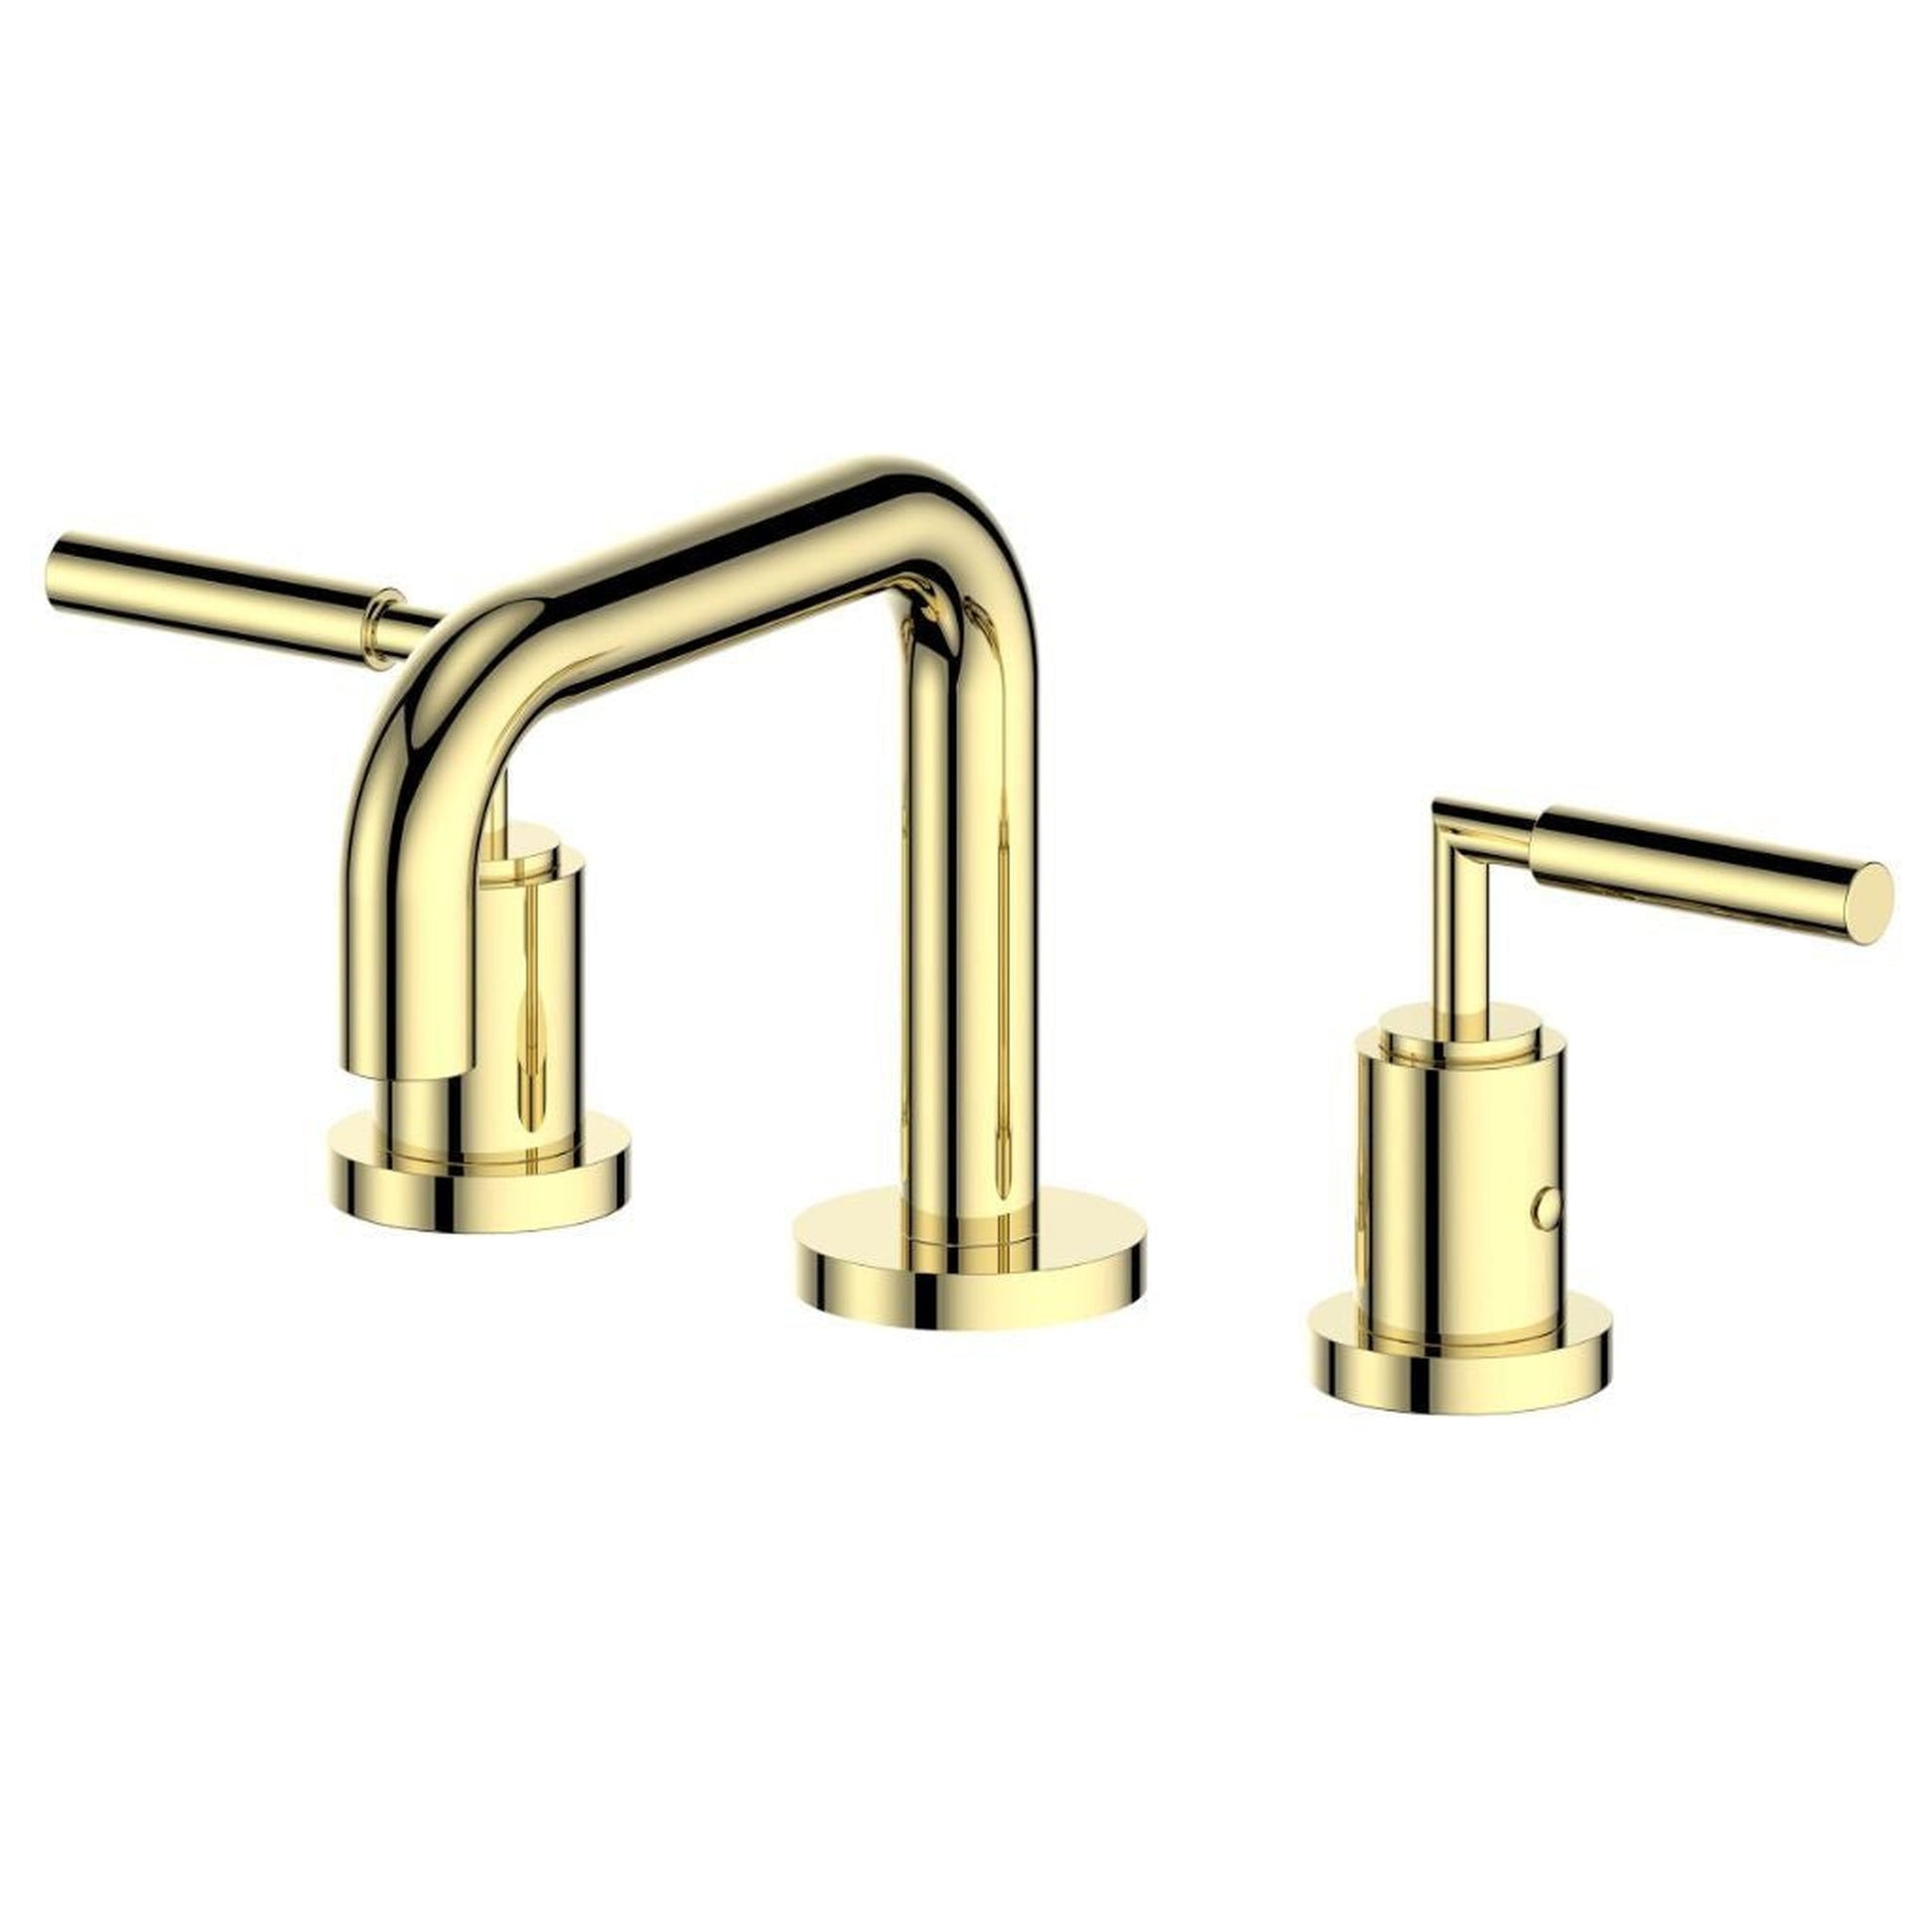 ZLINE El Dorado Widespread 1.5 GPM Polished Gold Bathroom Faucet With Drain